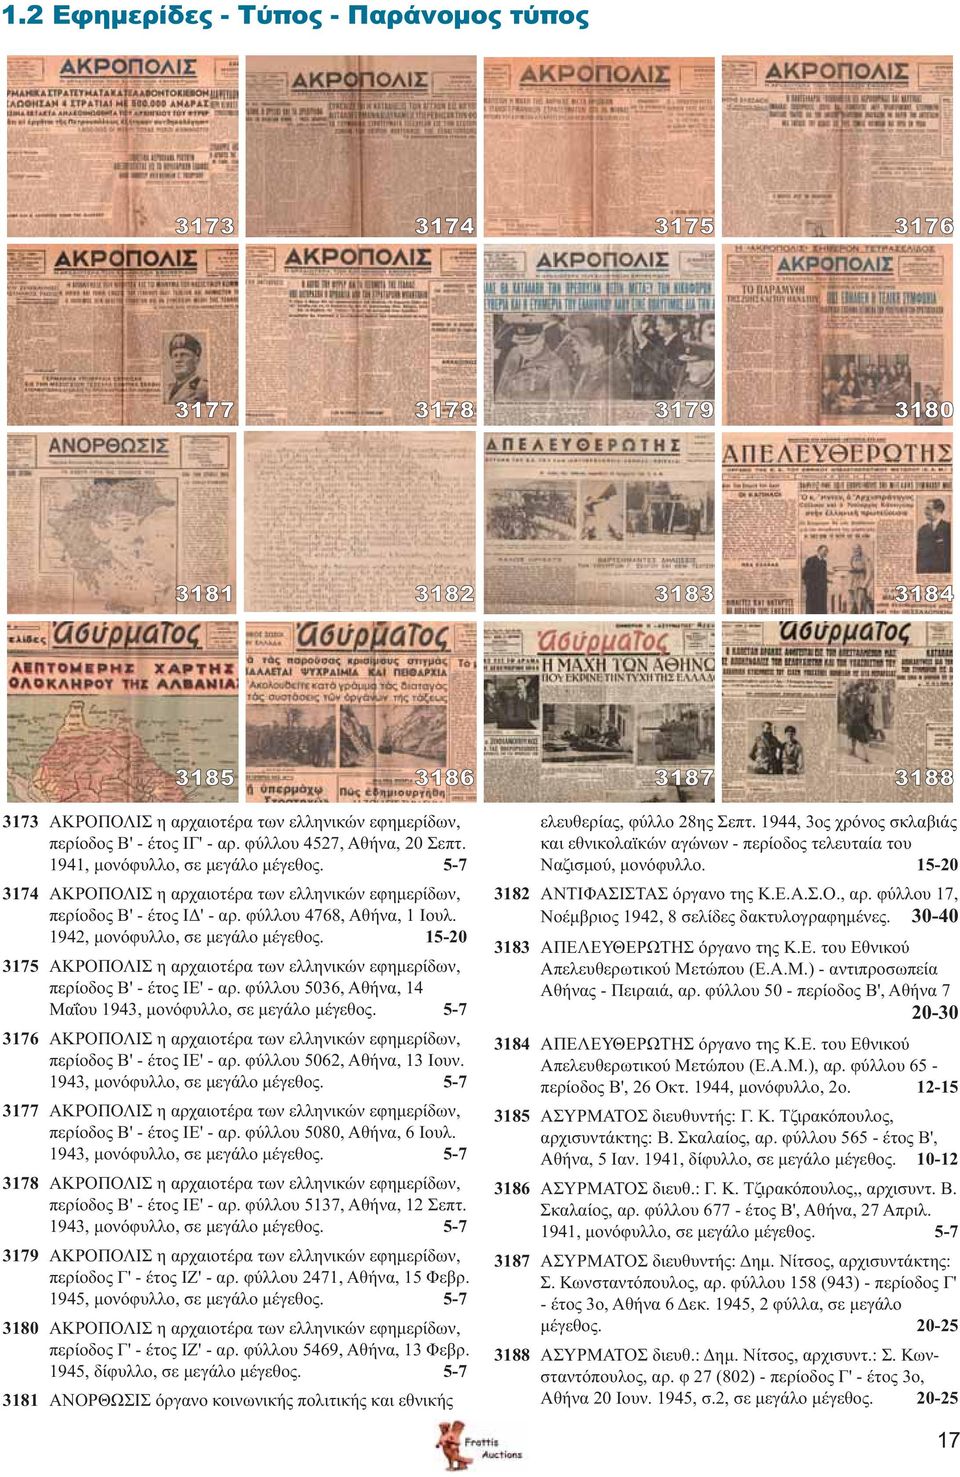 1942, μονόφυλλο, σε μεγάλο μέγεθος. 15-20 3175 ΑΚΡΟΠΟΛΙΣ η αρχαιοτέρα των ελληνικών εφημερίδων, περίοδος Β' - έτος ΙΕ' - αρ. φύλλου 5036, Αθήνα, 14 Μαΐου 1943, μονόφυλλο, σε μεγάλο μέγεθος.